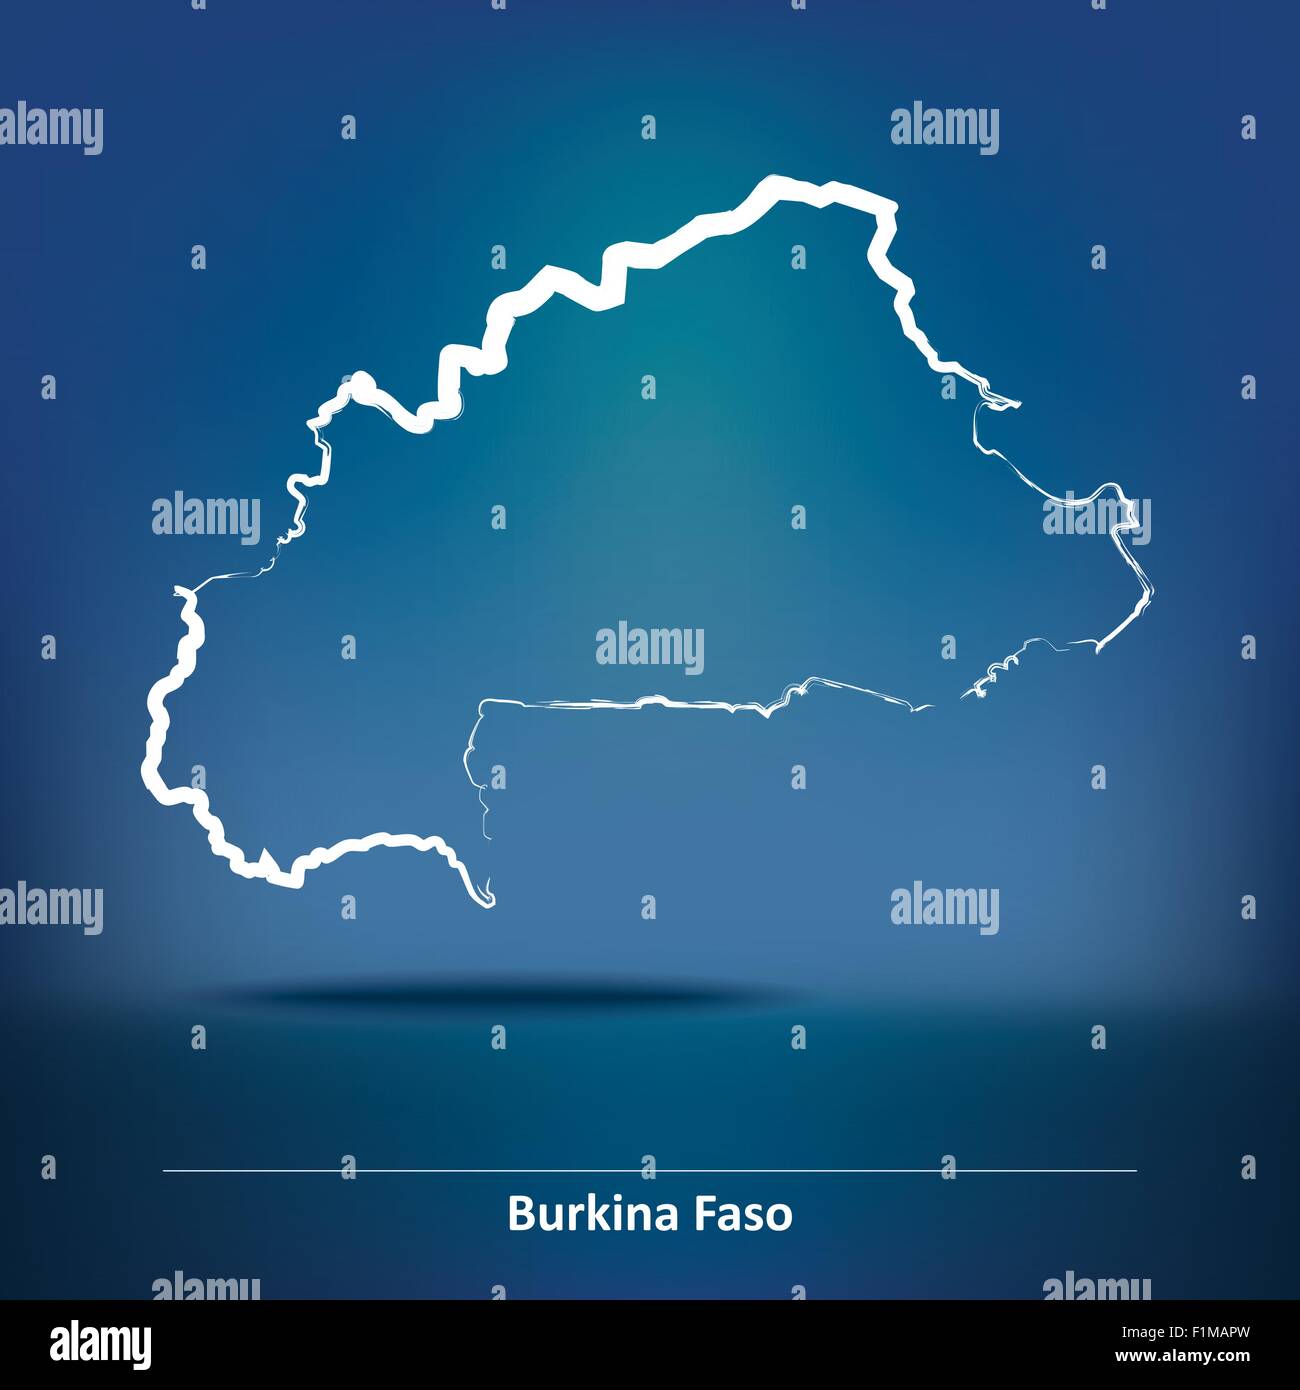 Karte von Burkina Faso - Vektor-Illustration Doodle Stock Vektor